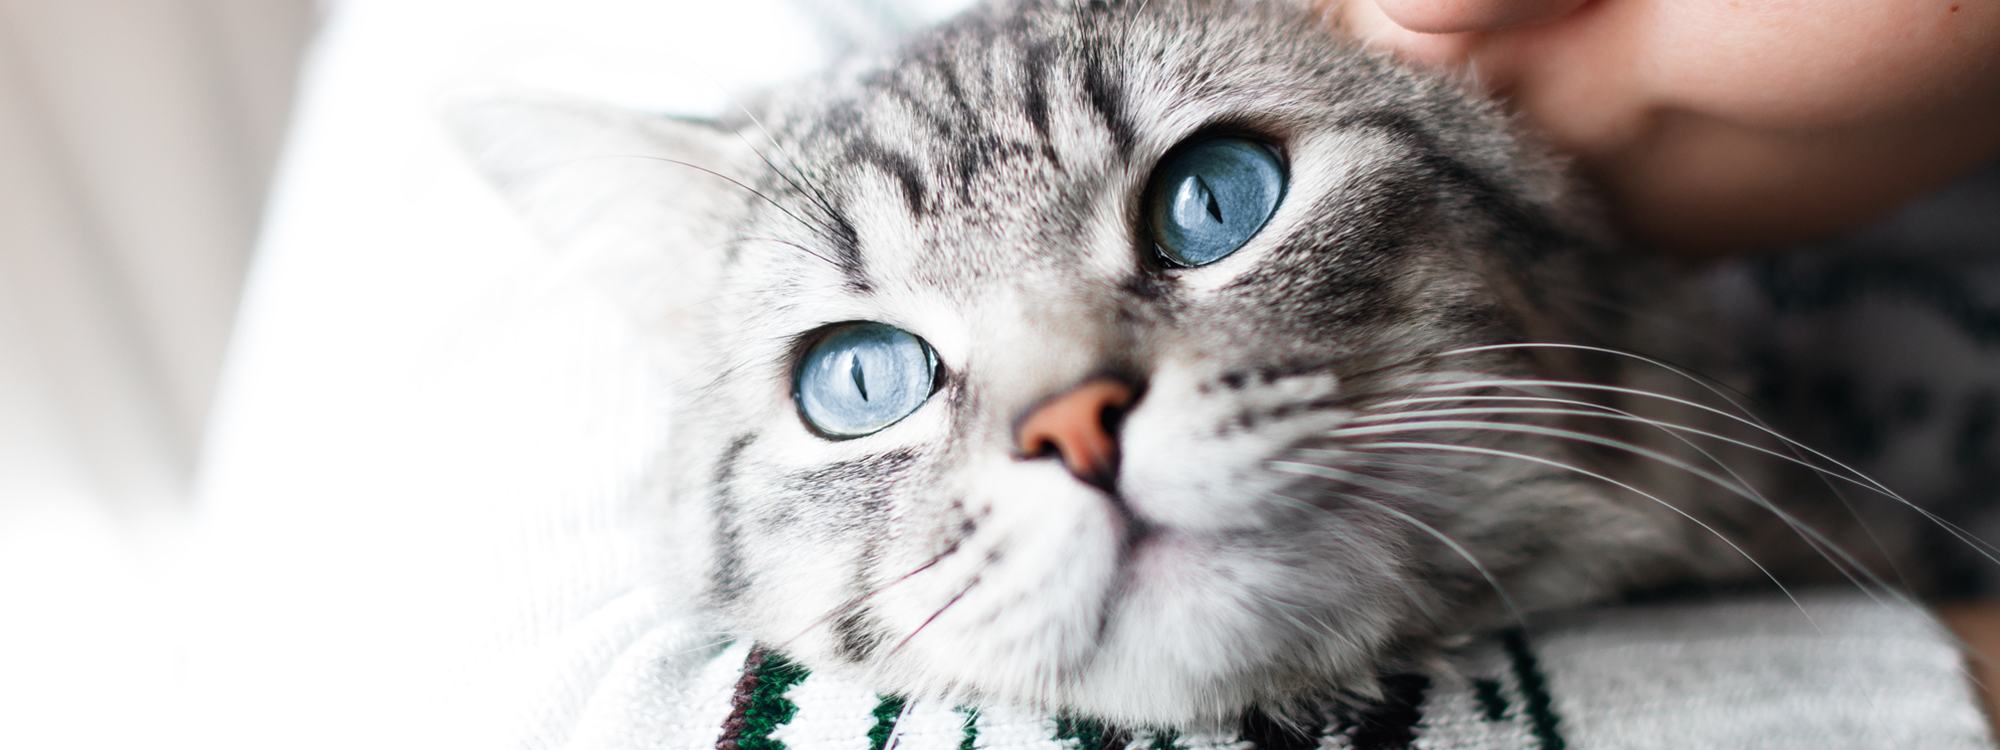 indsats lettelse Senatet Katteforsikring - Sygeforsikring til katte - Læs mere her